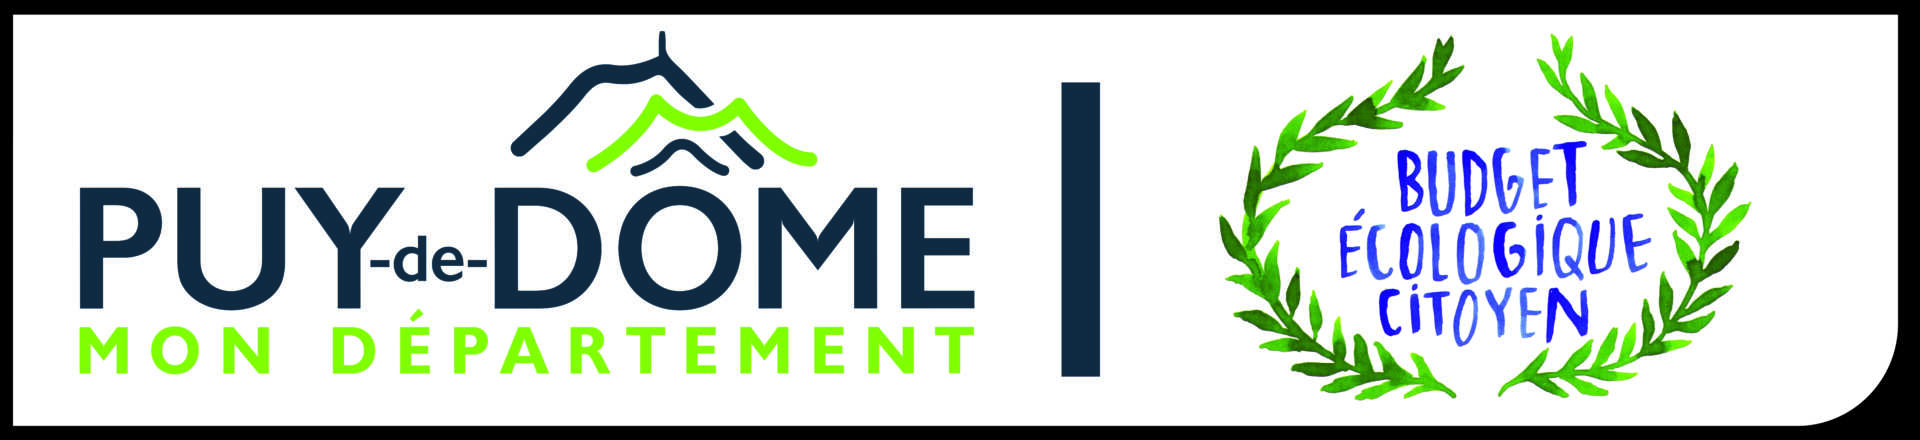 Logo Puy de dôme et du budget écologique et citoyen